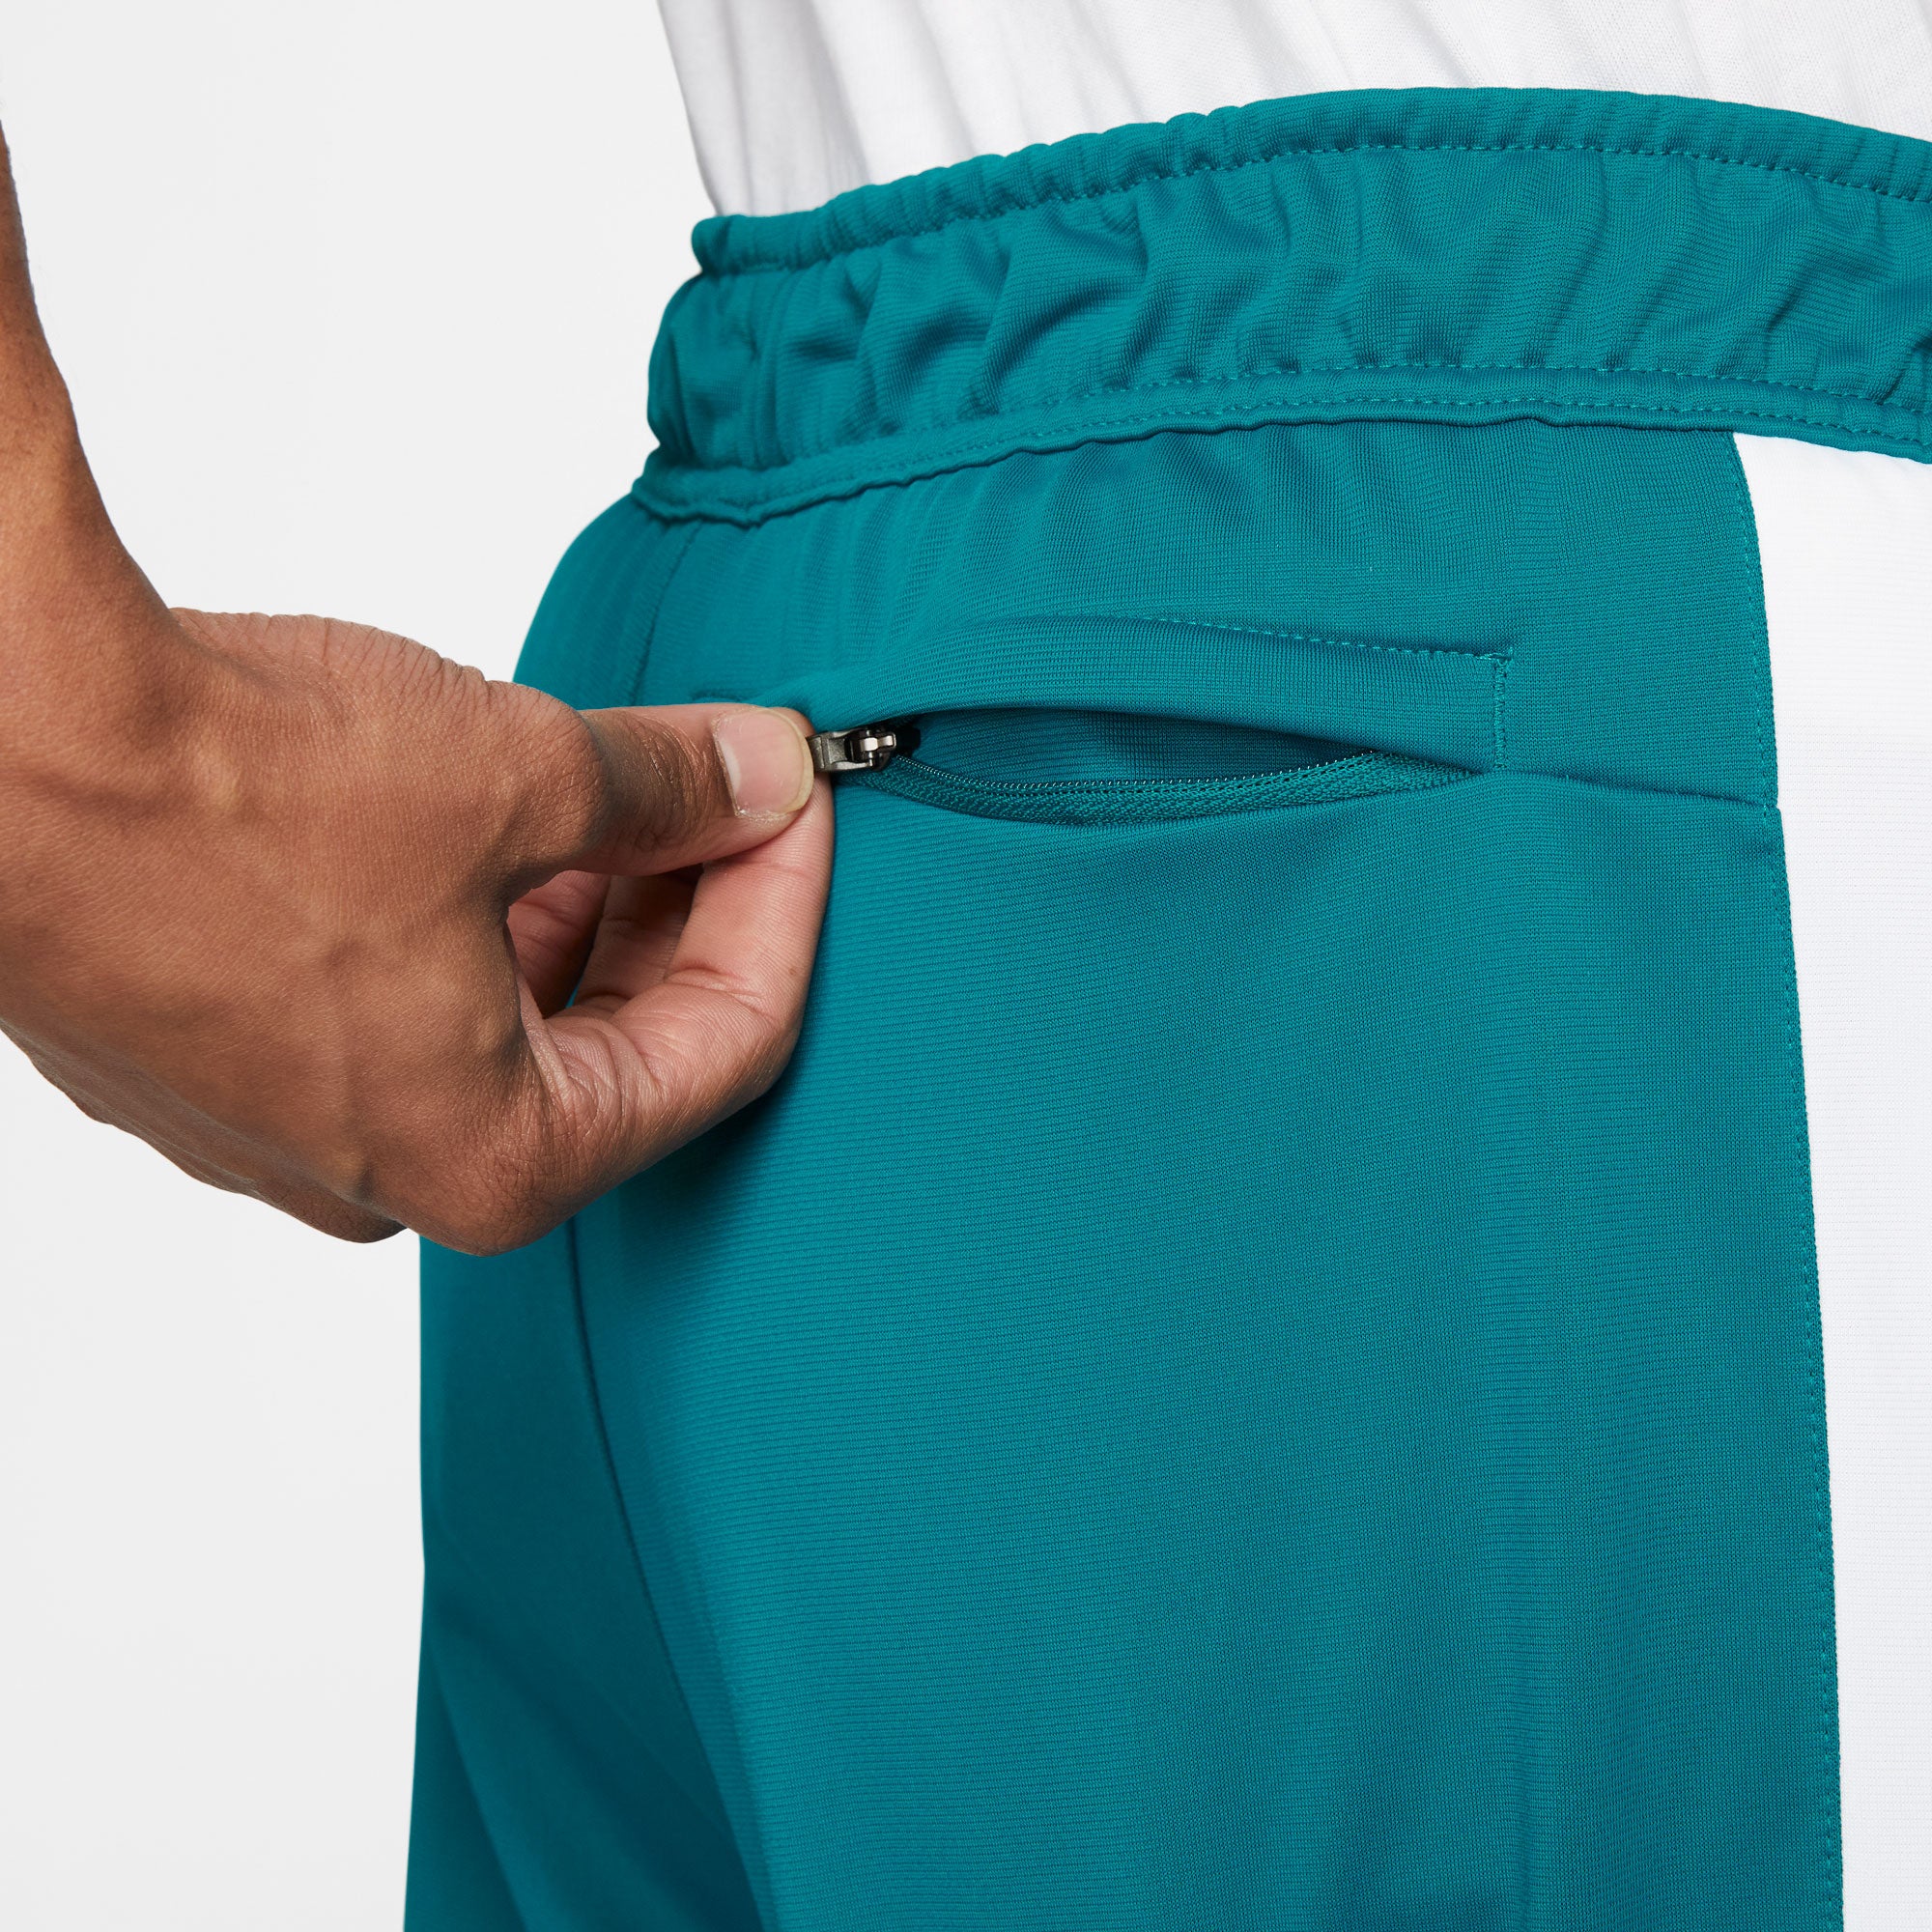 NikeCourt Heritage Men's Tennis Pants Green (5)